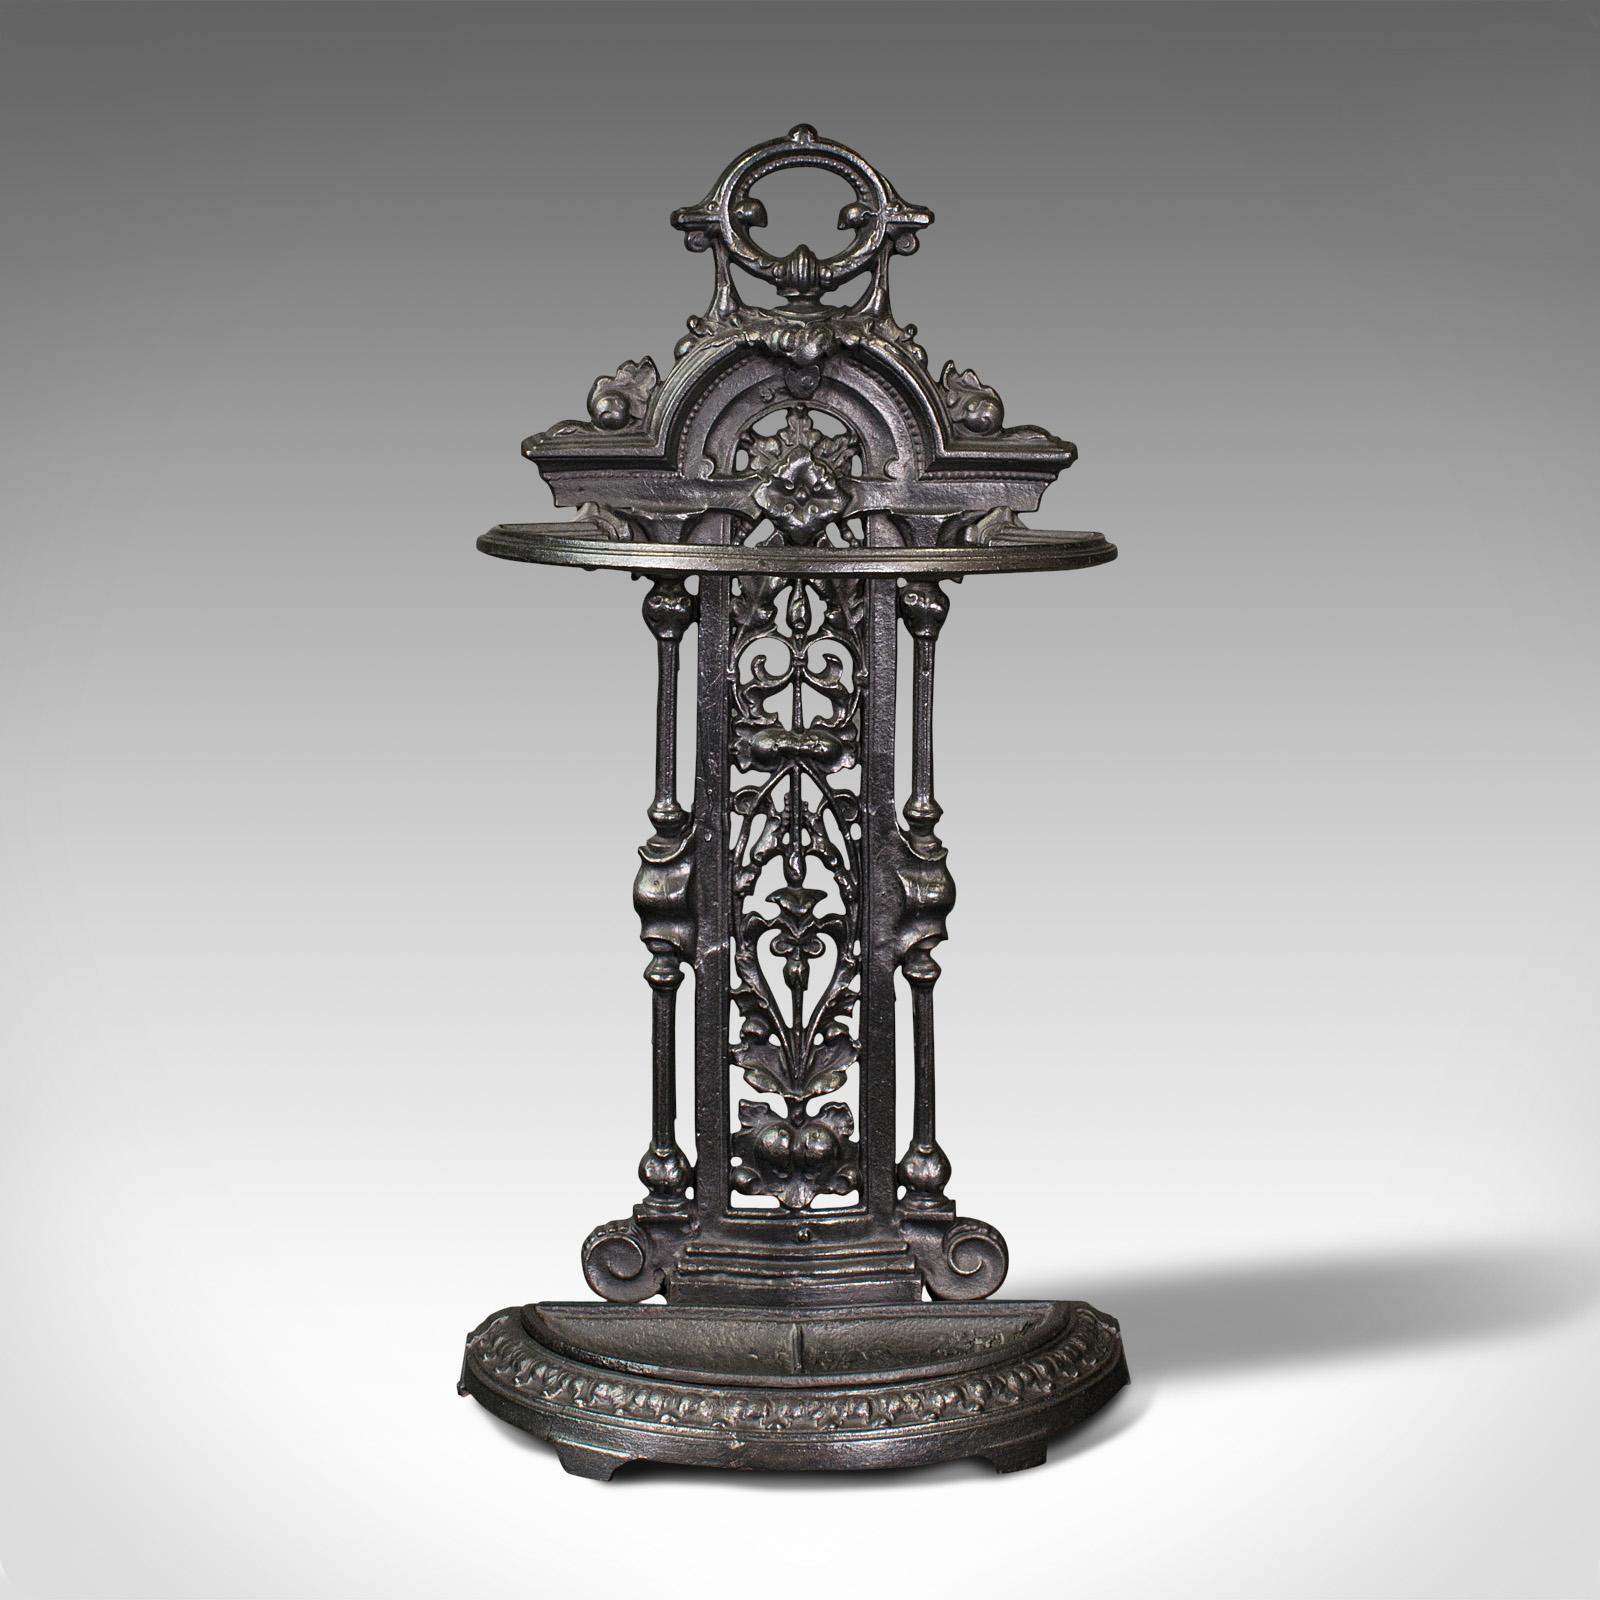 Dies ist ein antiker dekorativer Dielenständer. Ein englisches, gusseisernes Stangengestell in der Art von Coalbrookdale, aus der Edwardianischen Zeit, um 1910.

Wunderschön verzierter Flurständer in der unverwechselbaren Art von